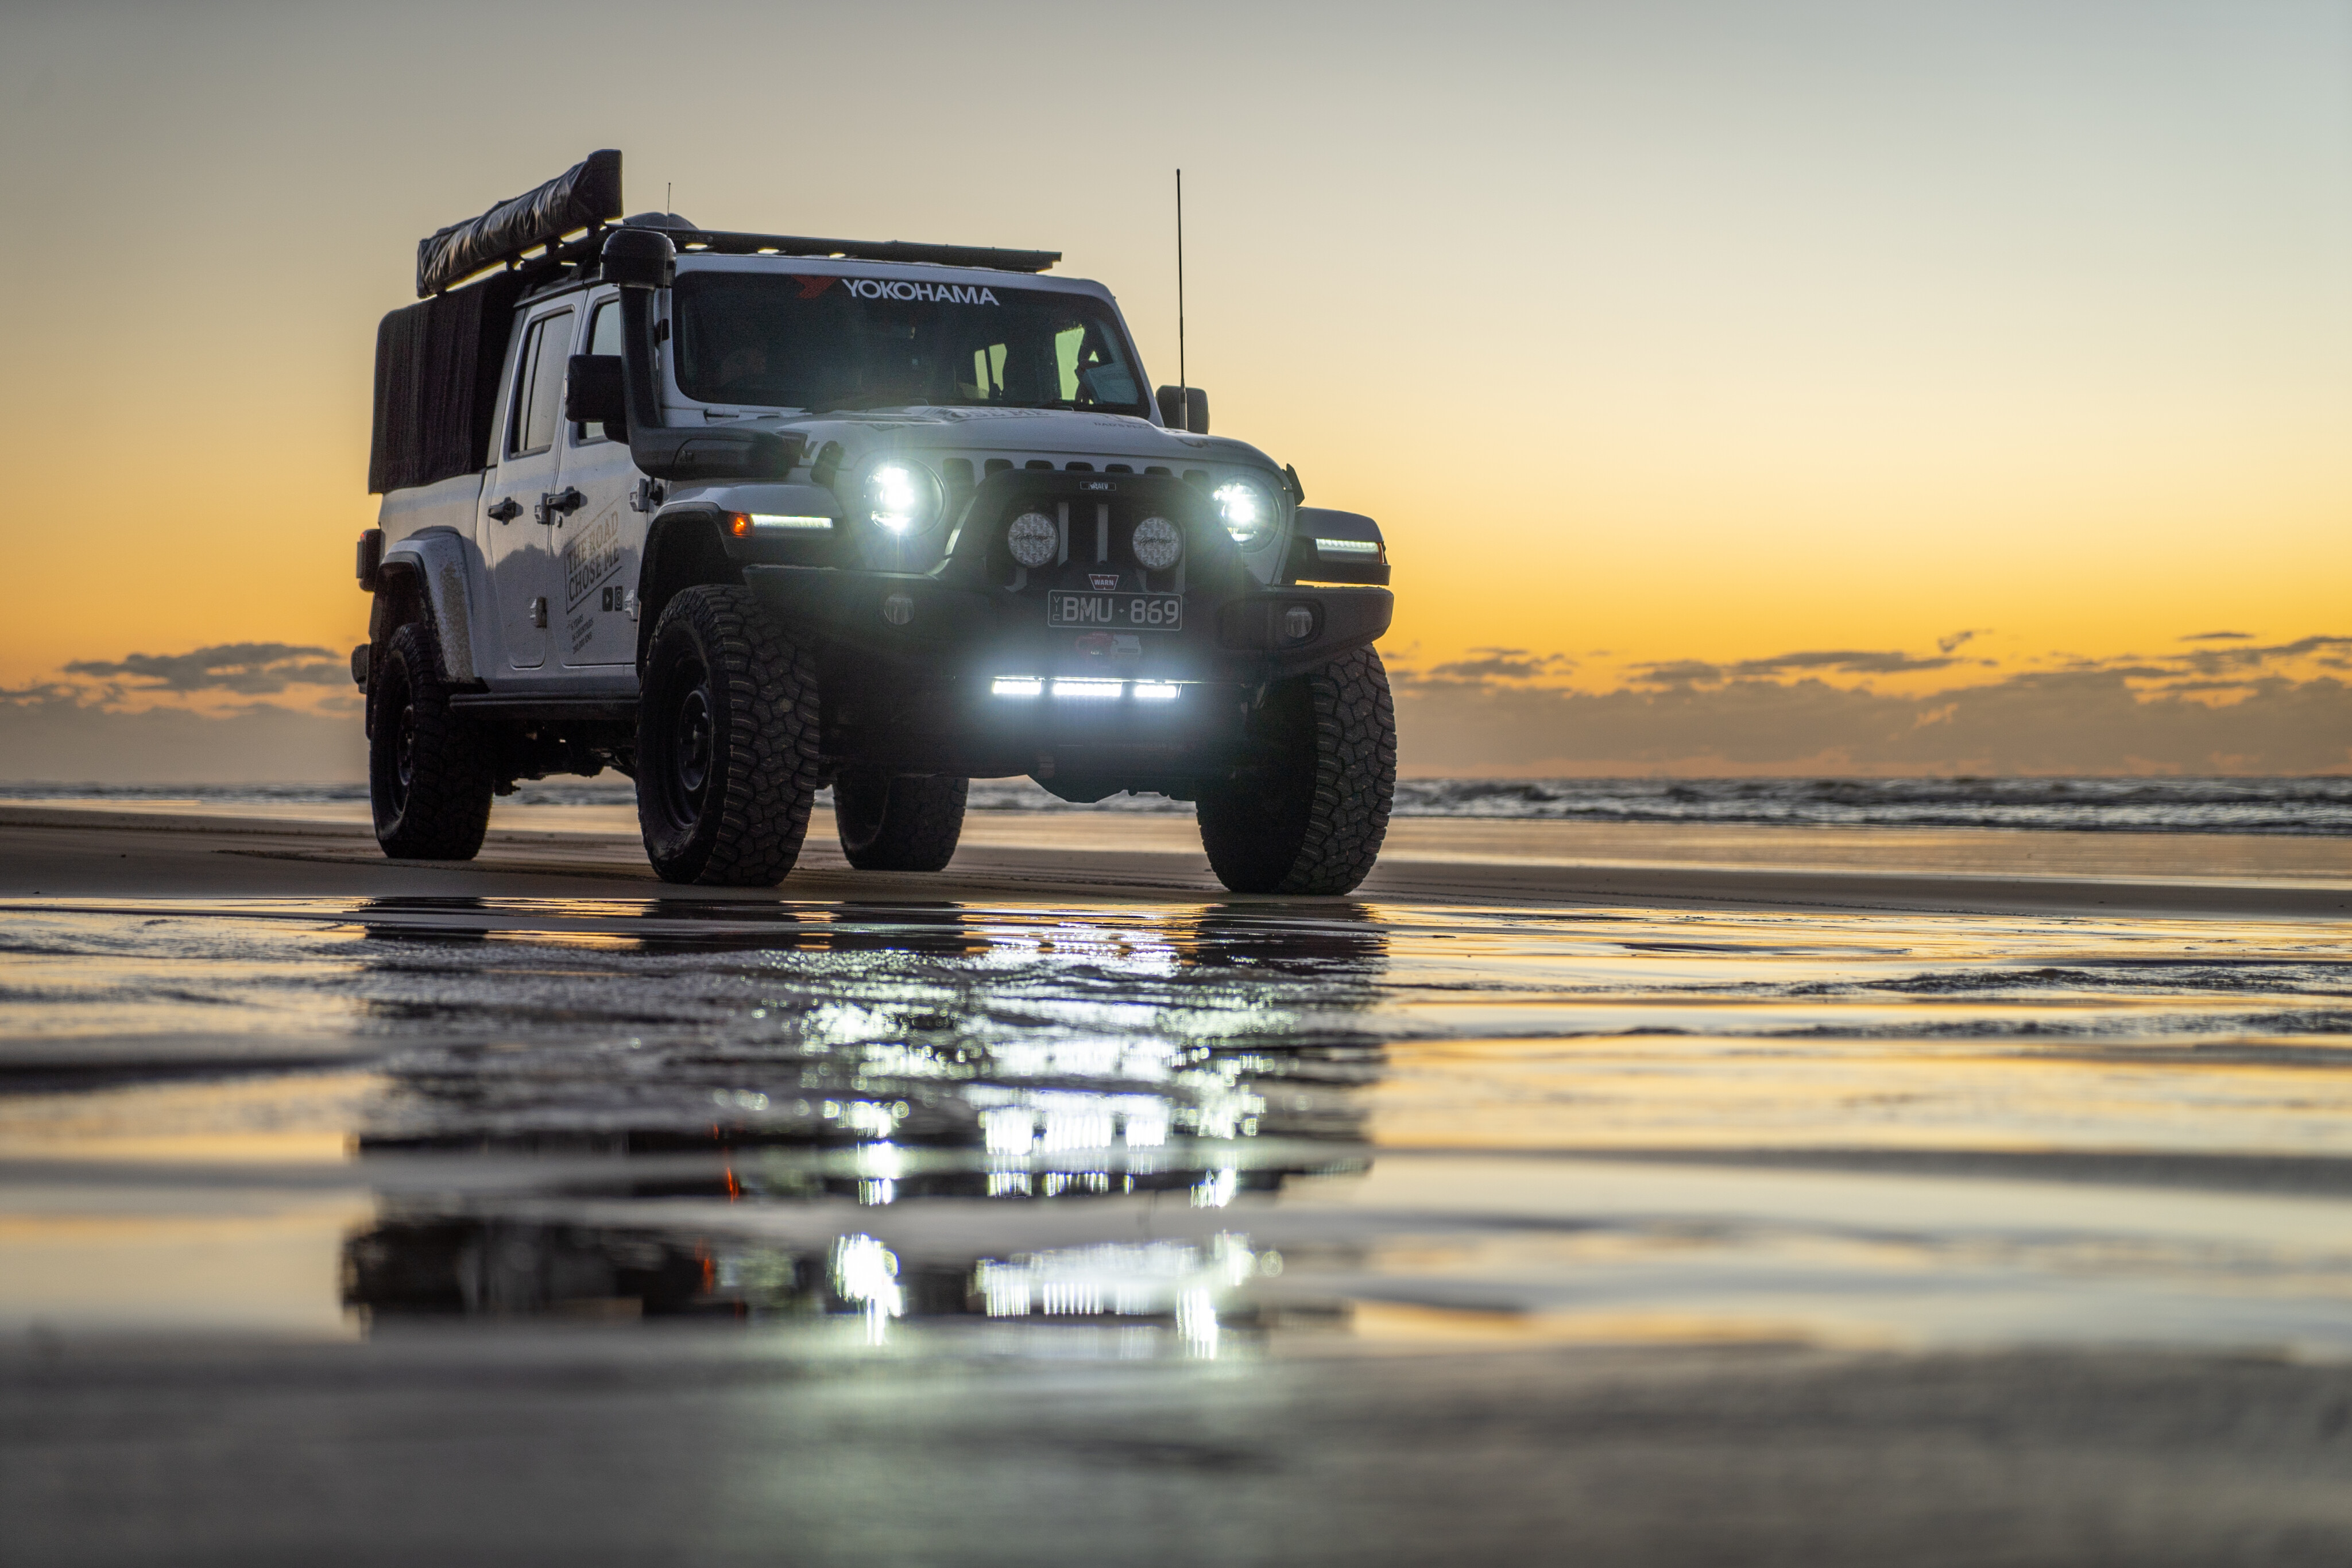 80ee21a8/trcm fraser island jeep sunrise lightsk gari explore 4x4 australia jpg